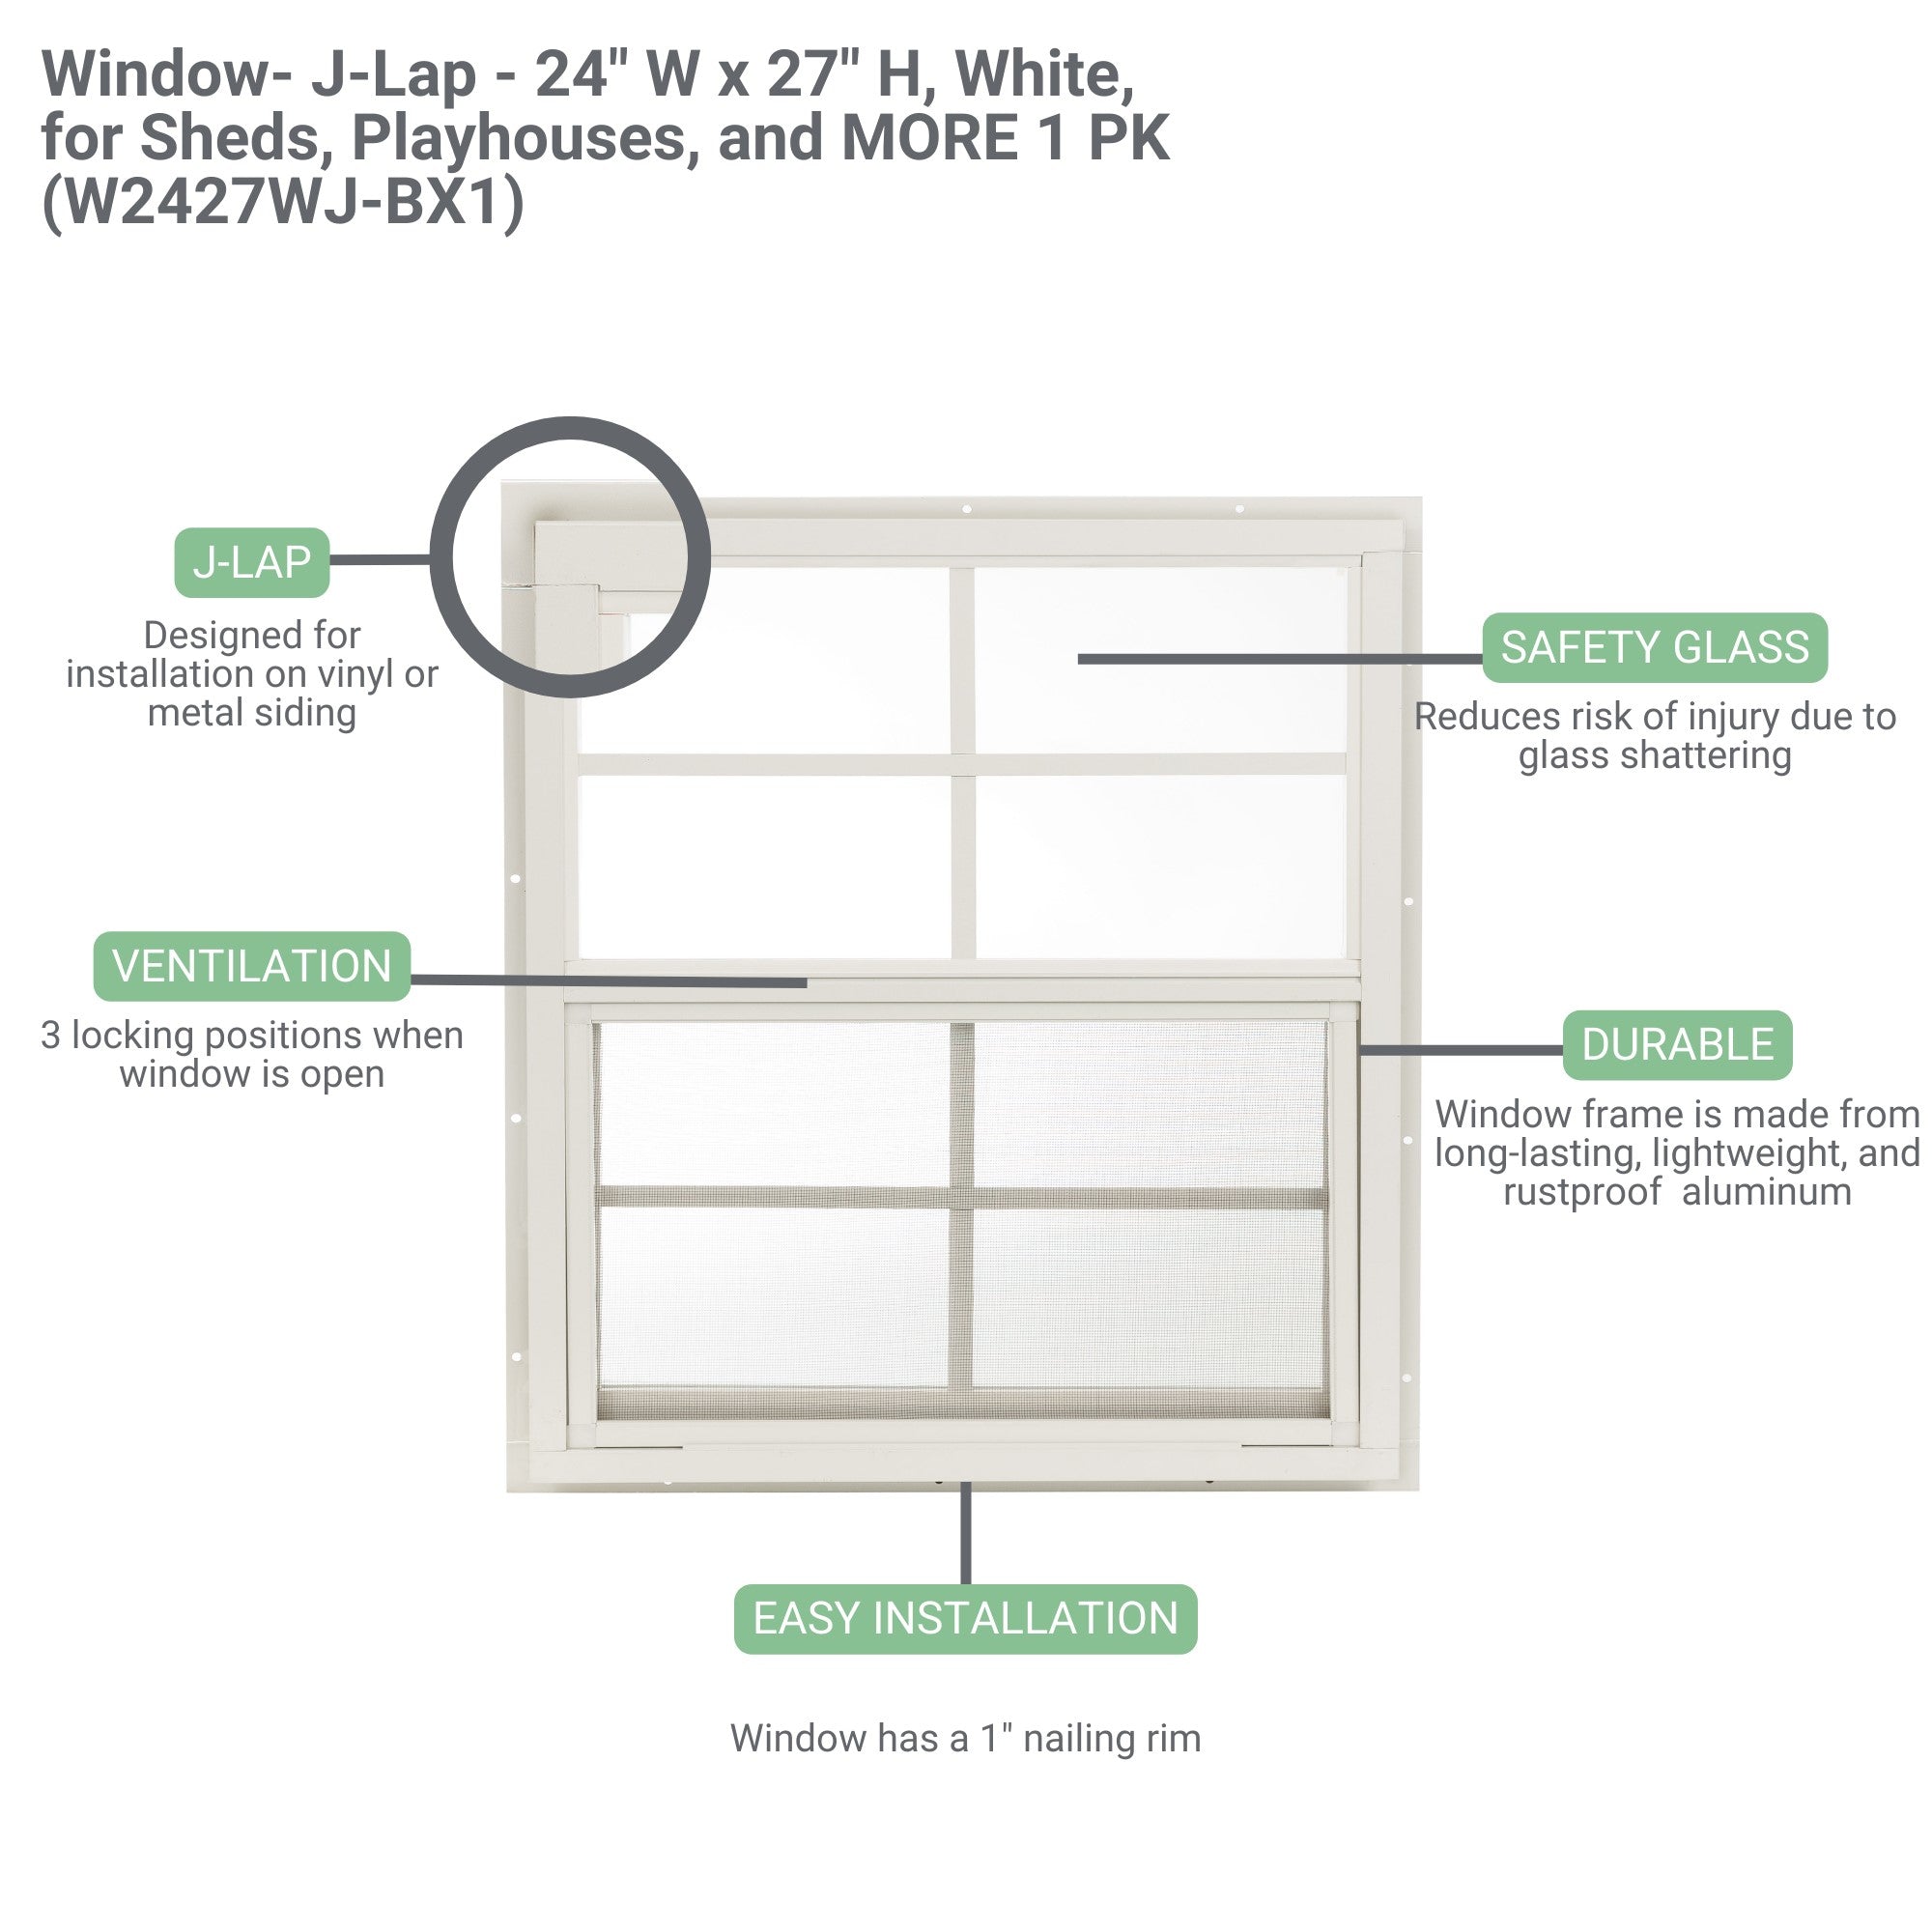 24" W x 27" H J-Lap Mount Shed Window, 1 PK